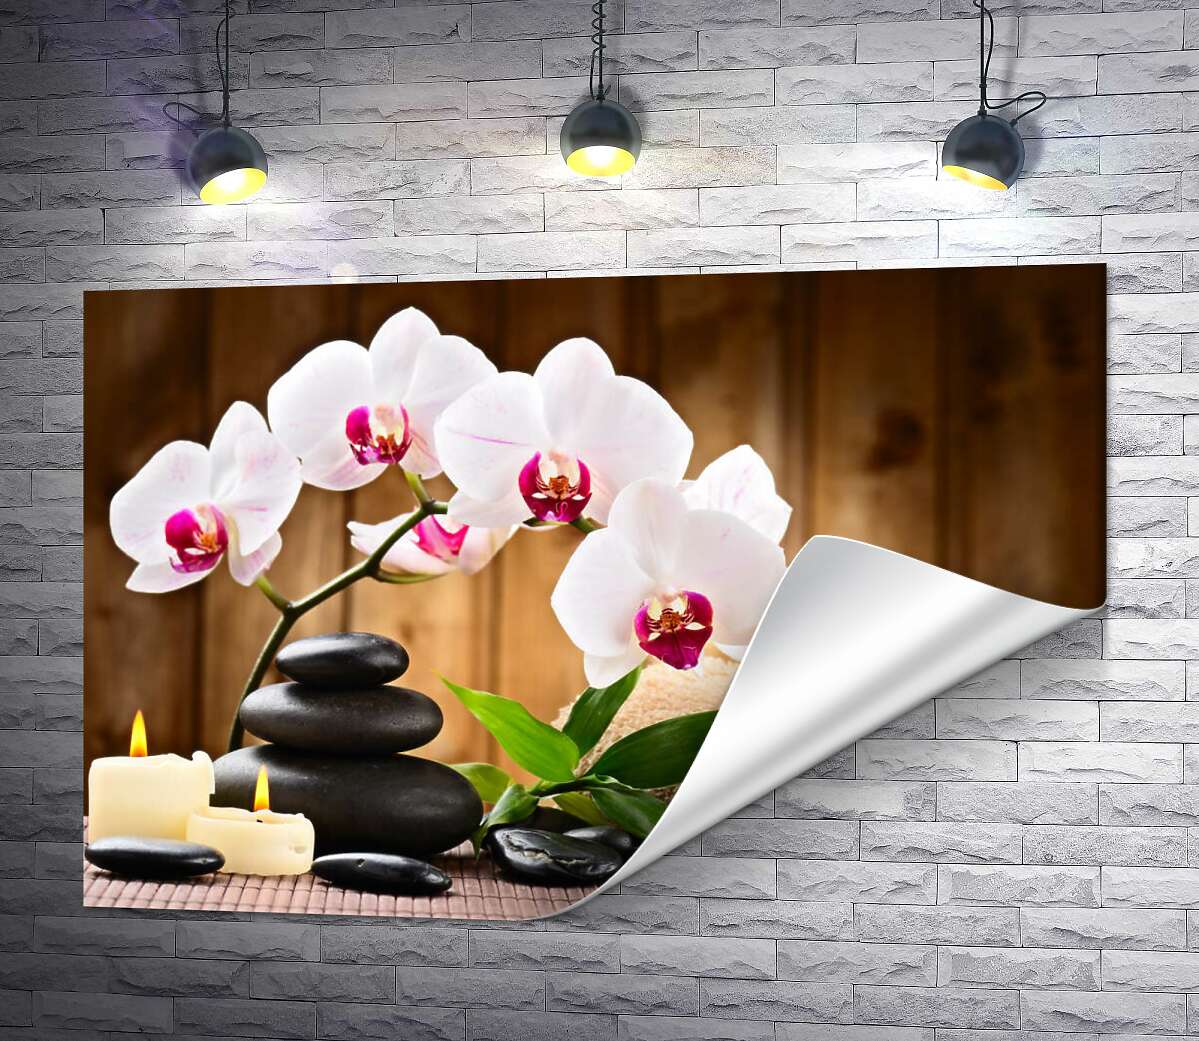 друк Розслабляючі складові спа: свіжі орхідея та бамбук, блискучі камені біля м'якого рушника та плаючі свічки